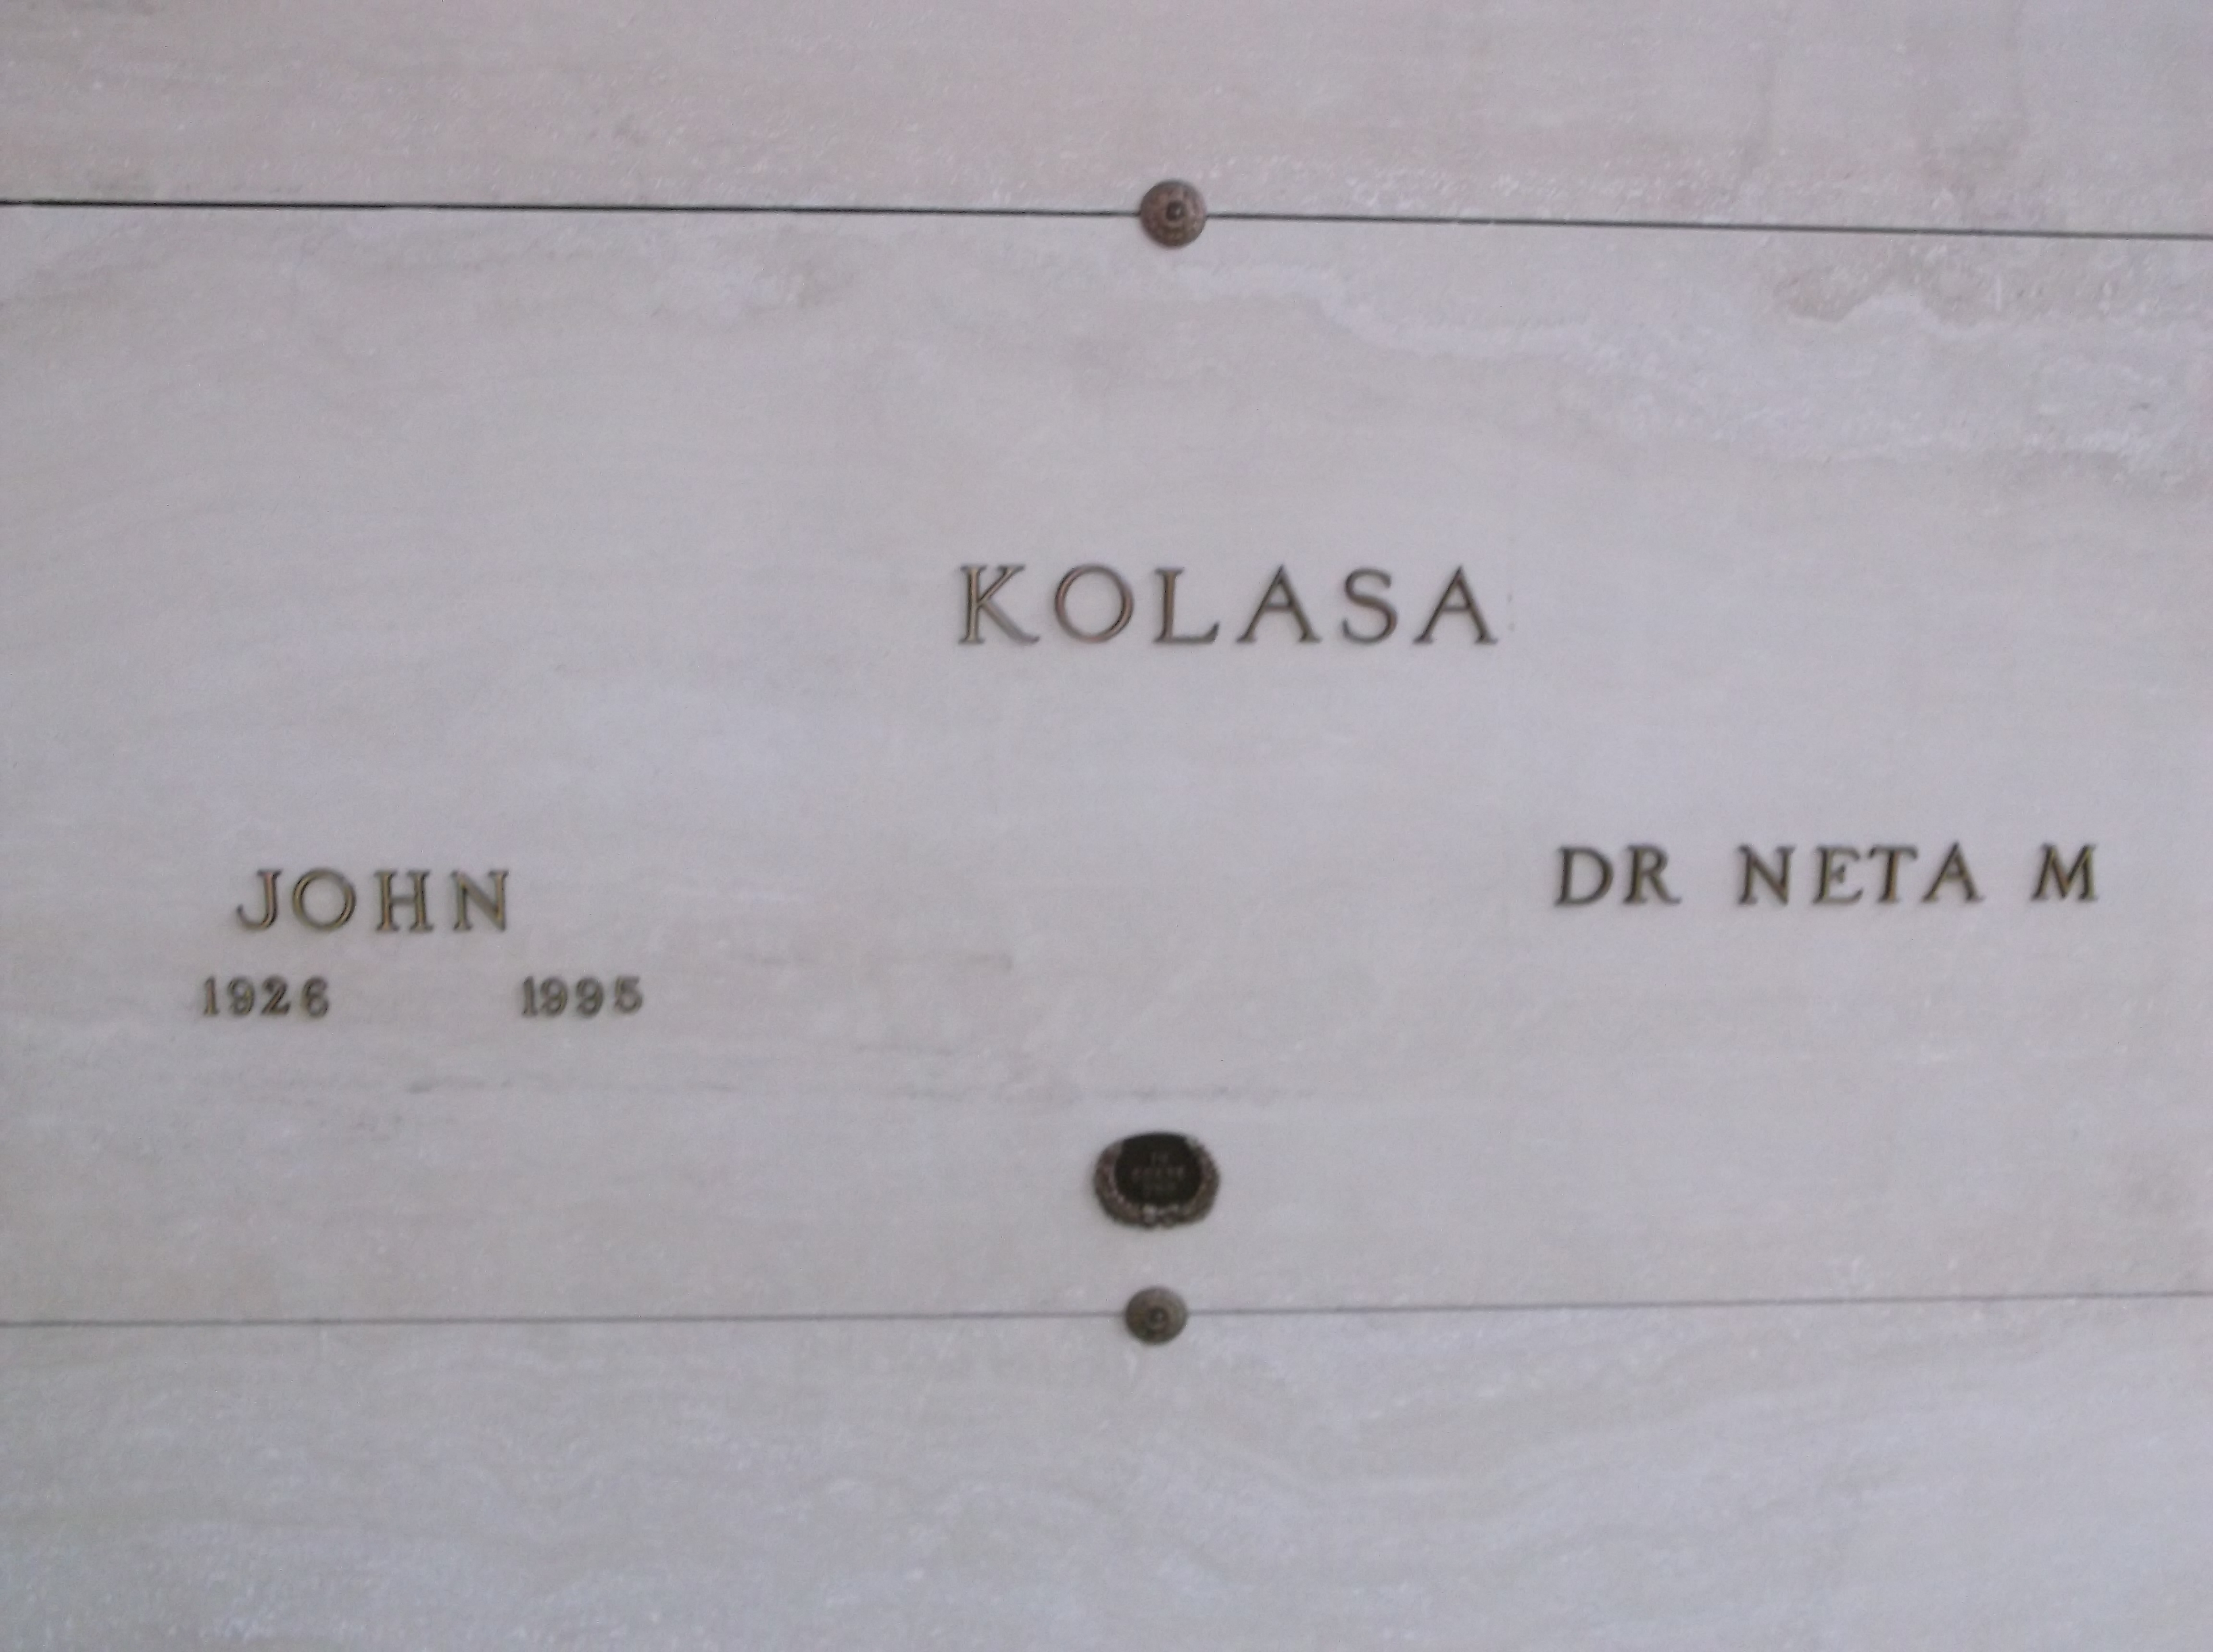 John Kolasa